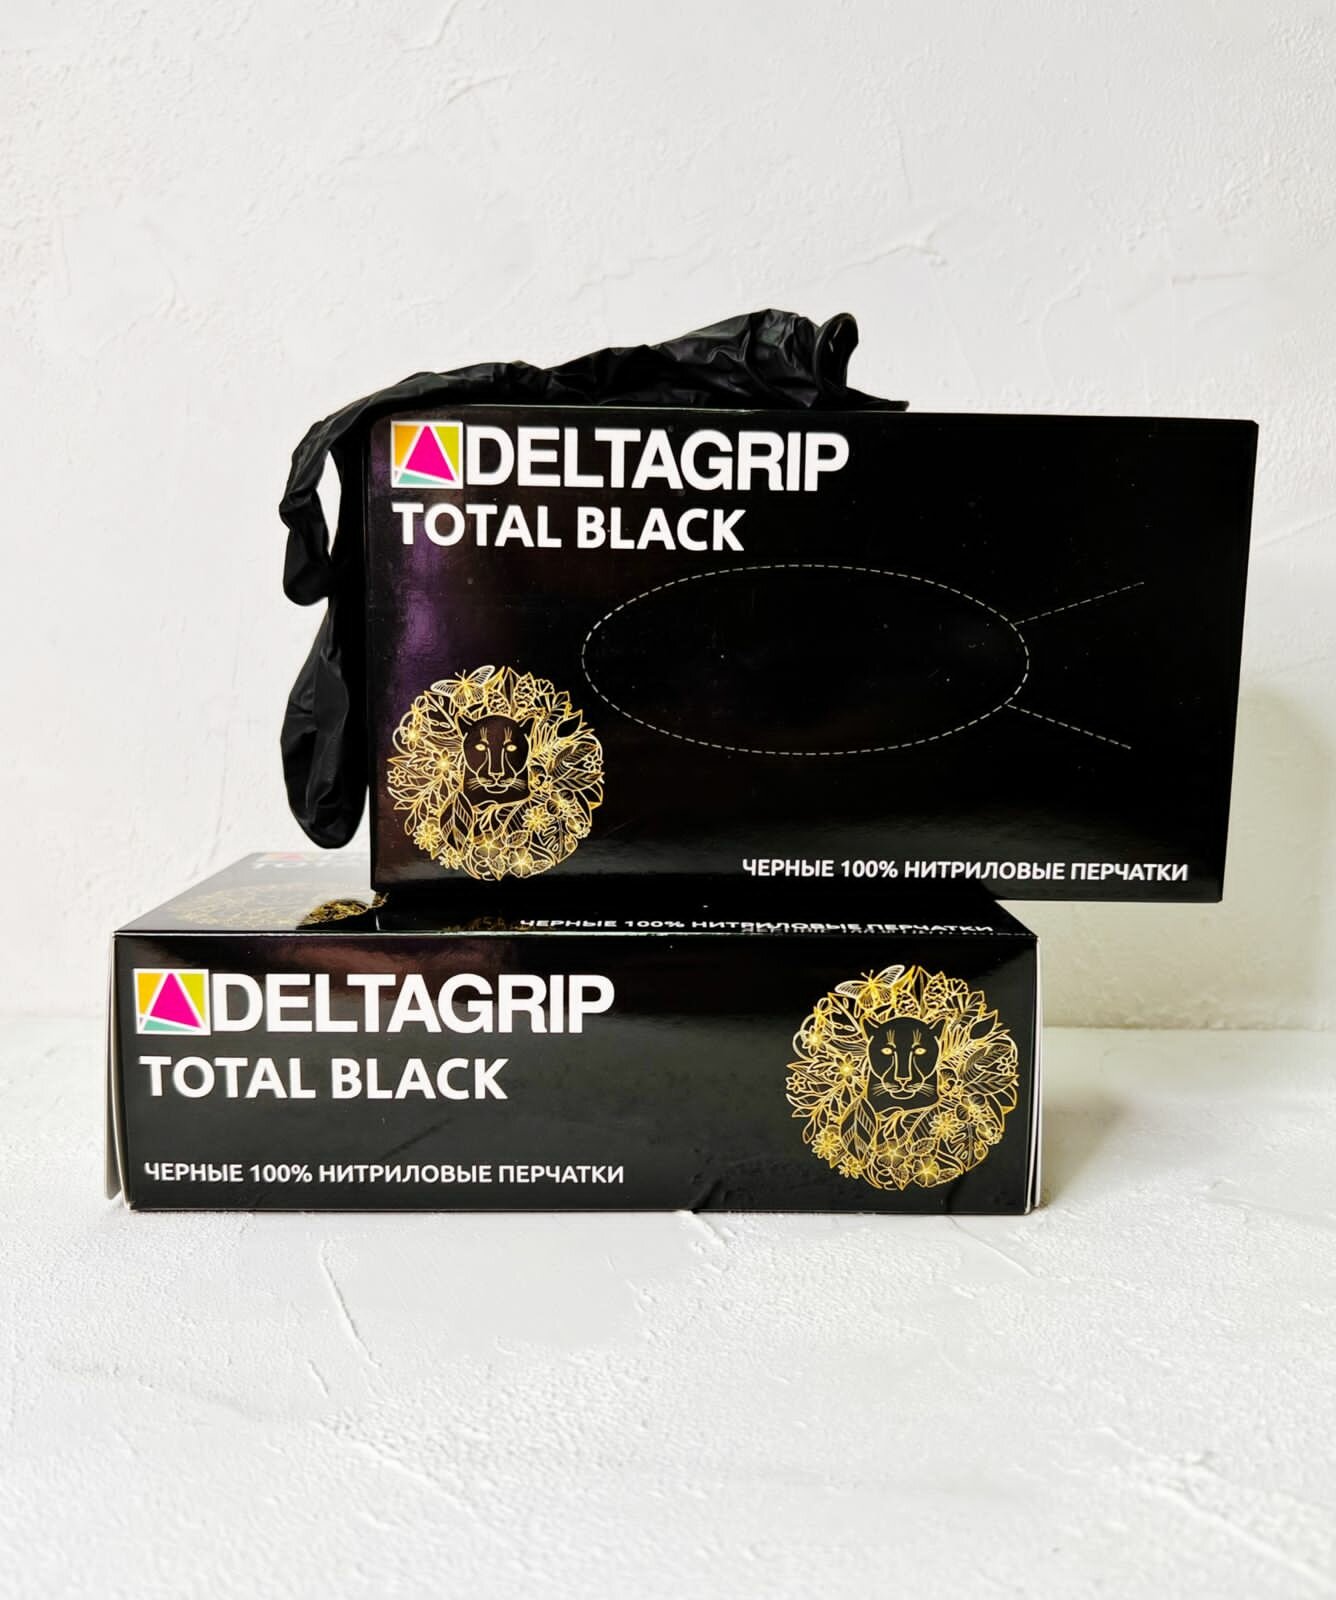 Перчатки нитриловые Gward Deltagrip Ultra LS Black, цвет: черный, размер L, 100 шт. (50 пар), 8 грамм нитрила пара